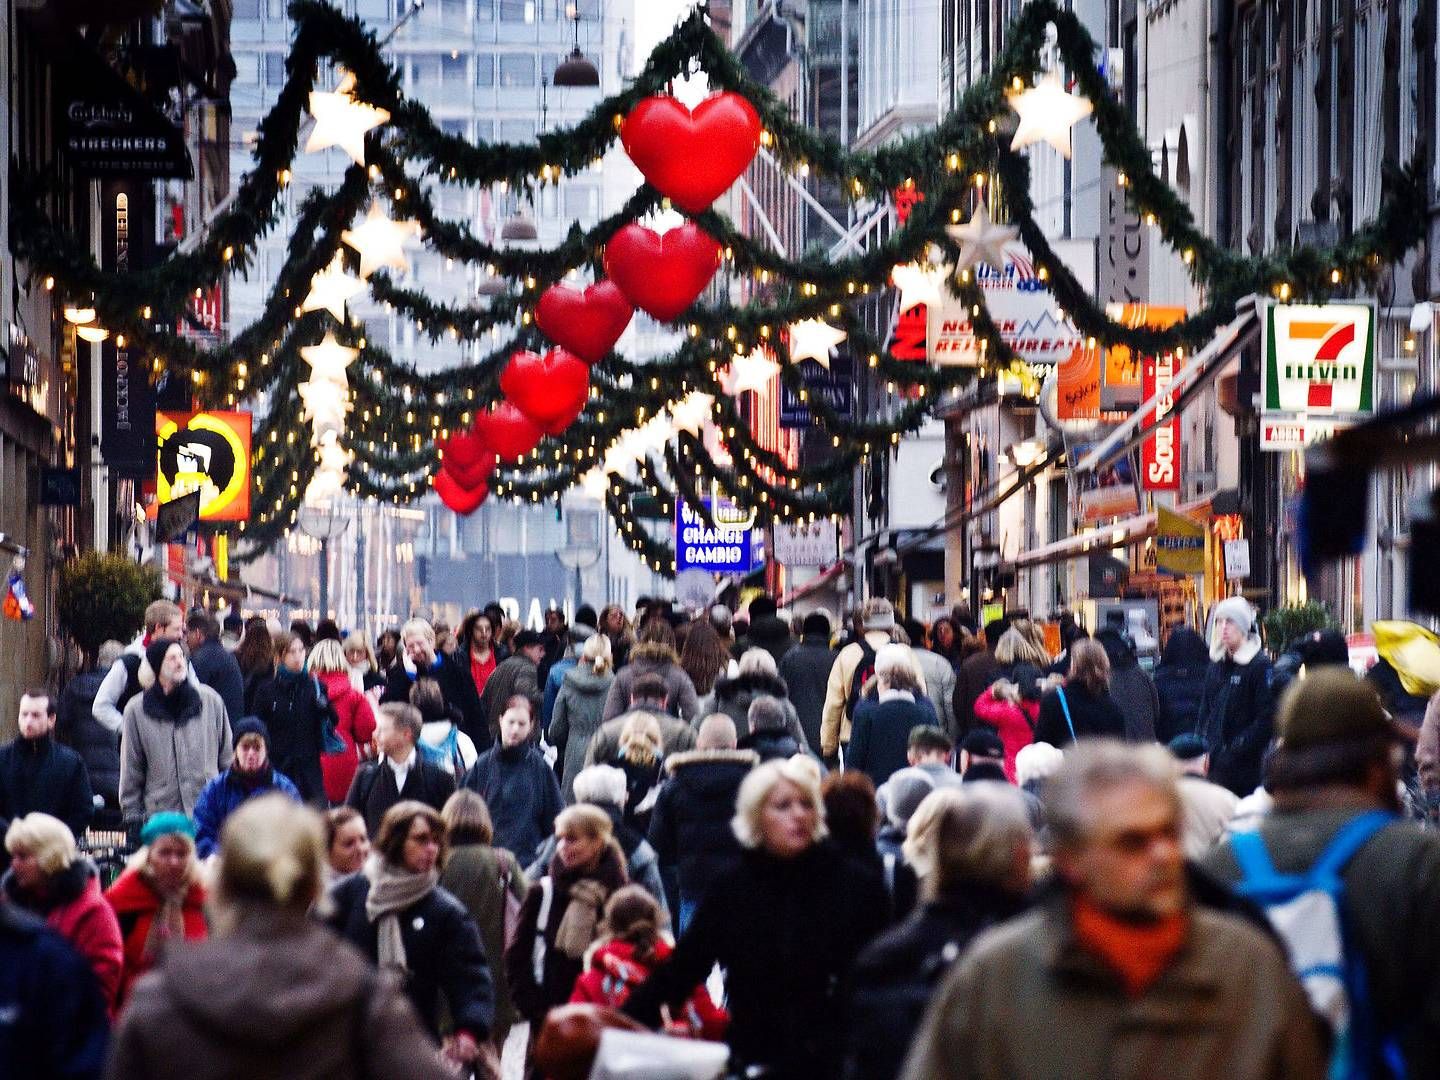 København risikerer at blive en ensformig by, hvis de små butikker lukker i centrum, advarer direktør for handelsstadsforening. | Foto: Jens Dige/ritzau Scanpix